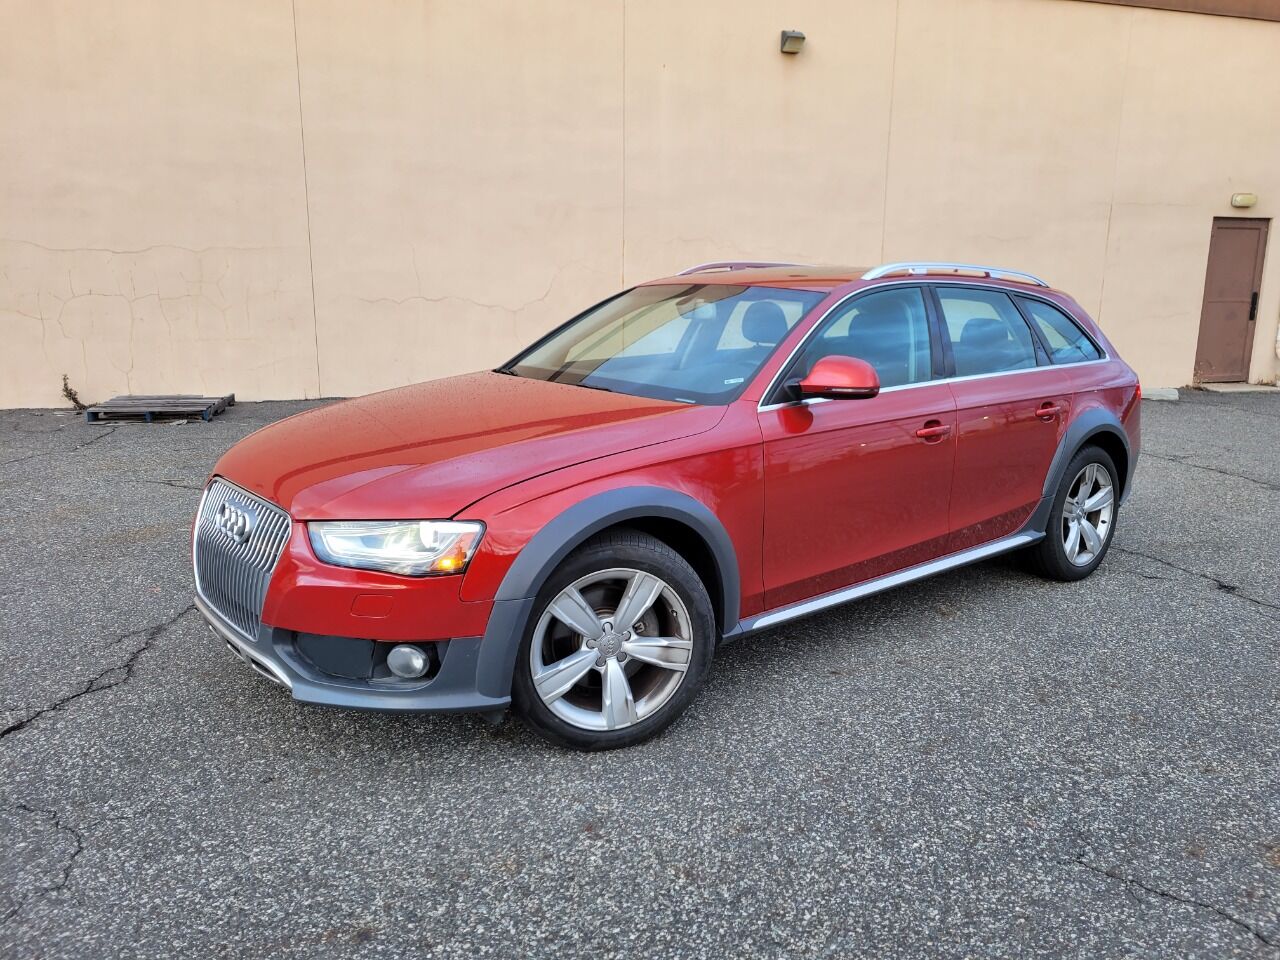 Audi Allroad For Sale - Carsforsale.com®